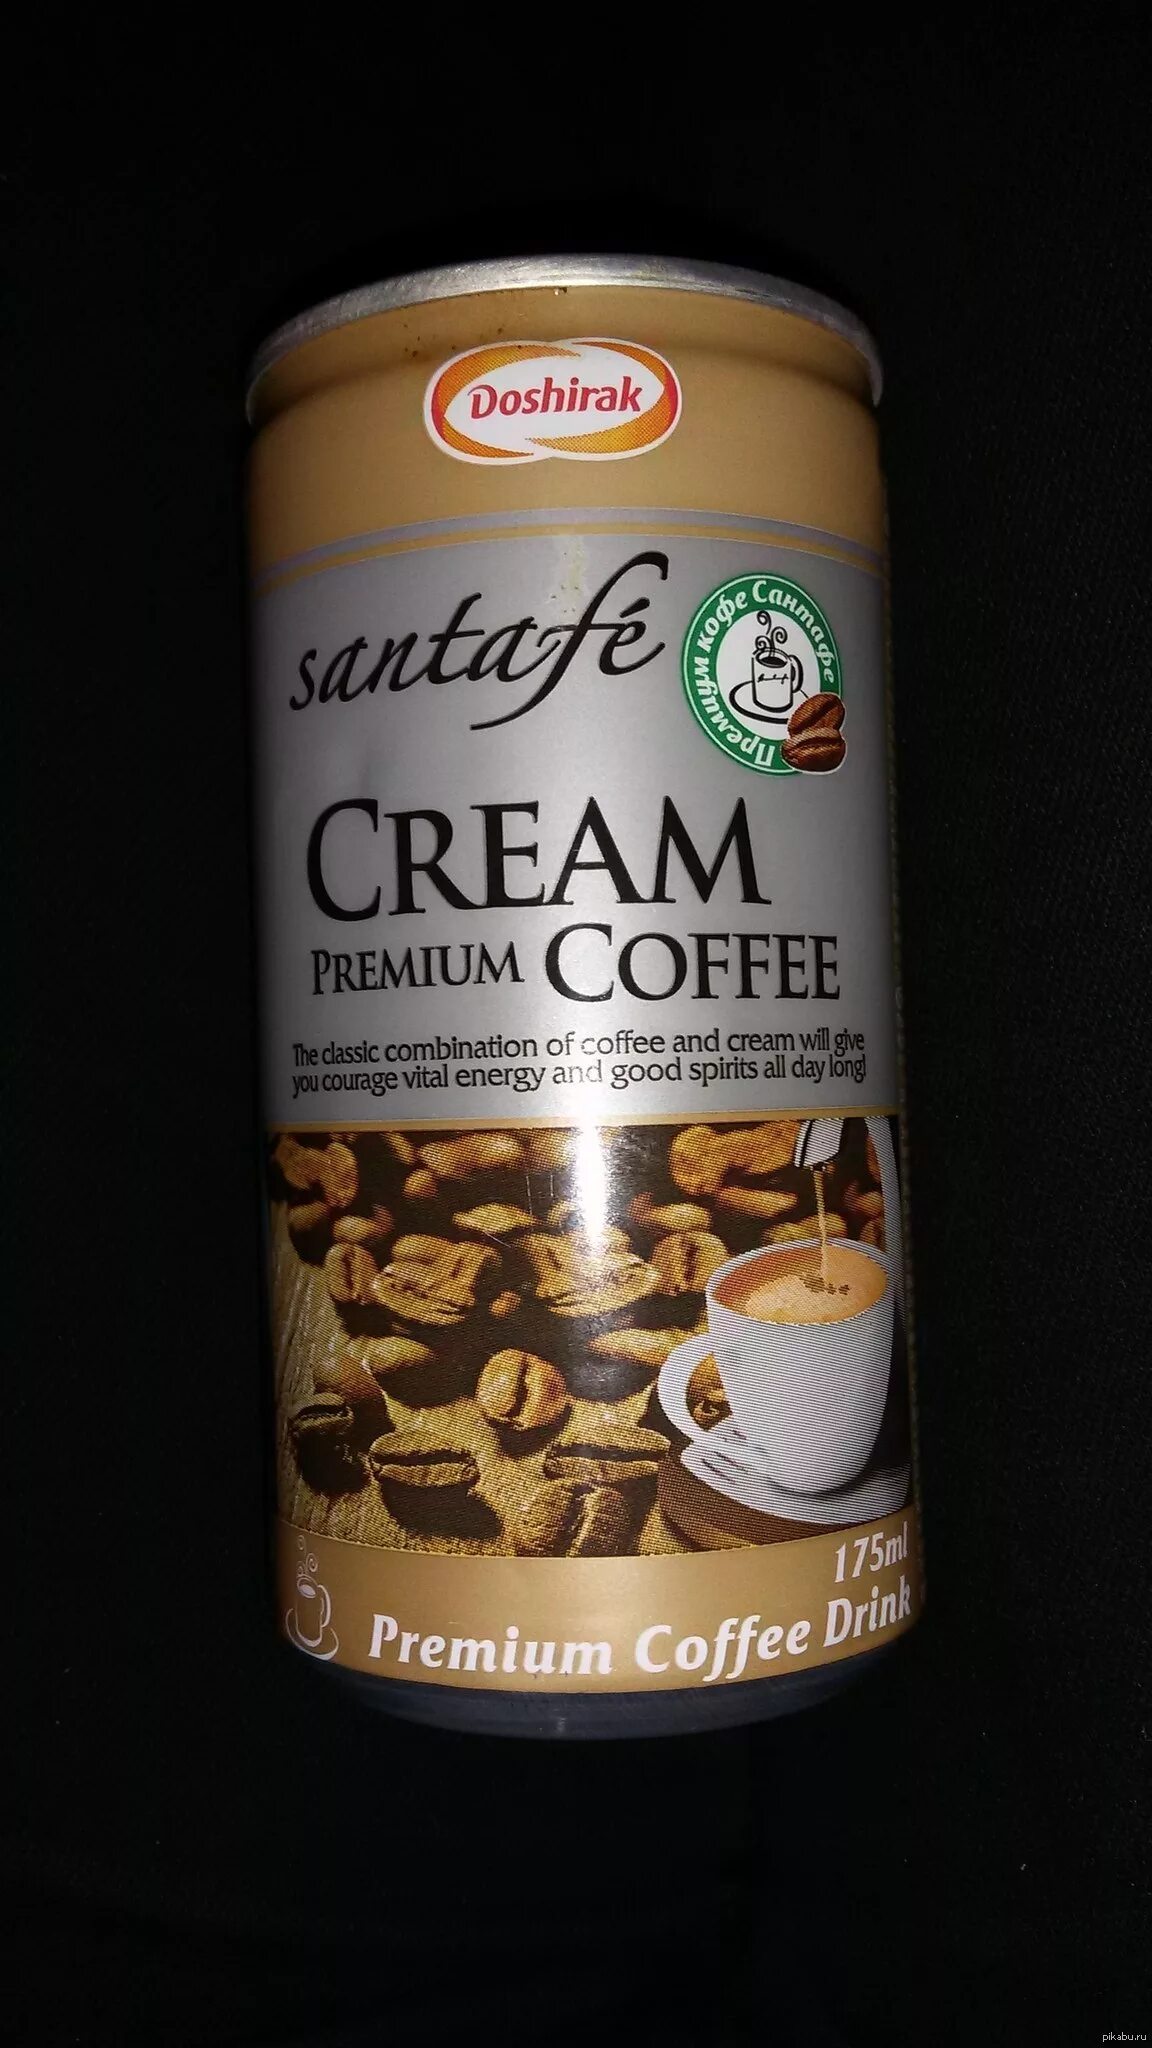 Кофе Санта Фе капучино175мл. Кофейный напиток SANTAFE Premium Coffee латте 0.175 л. Кофе в баночках готовое. Кофейный напиток в баночке. Купить кофе готовое